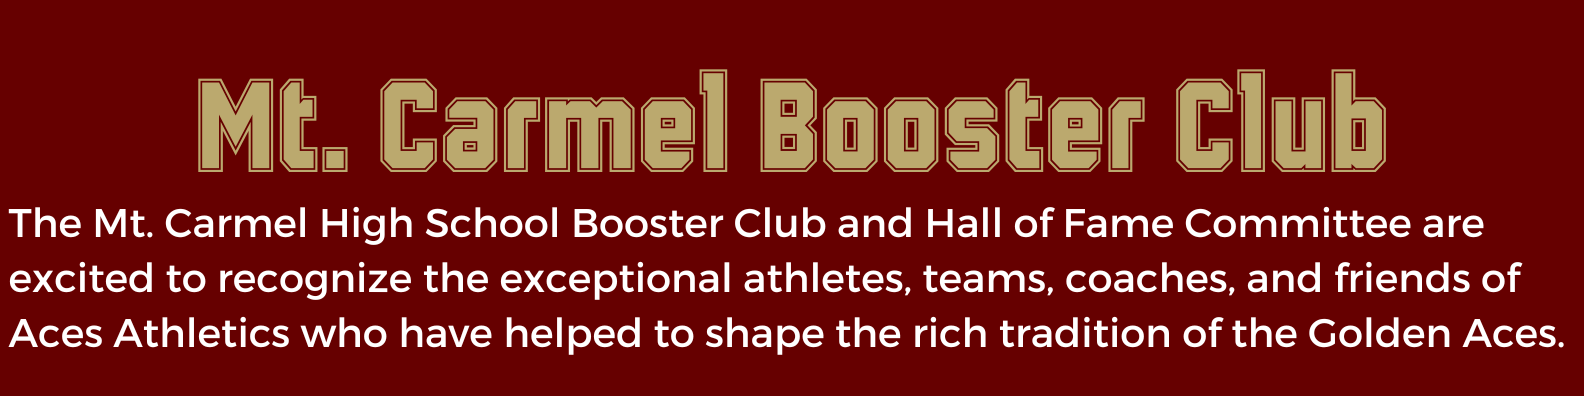 Mt. Carmel Booster Club statement